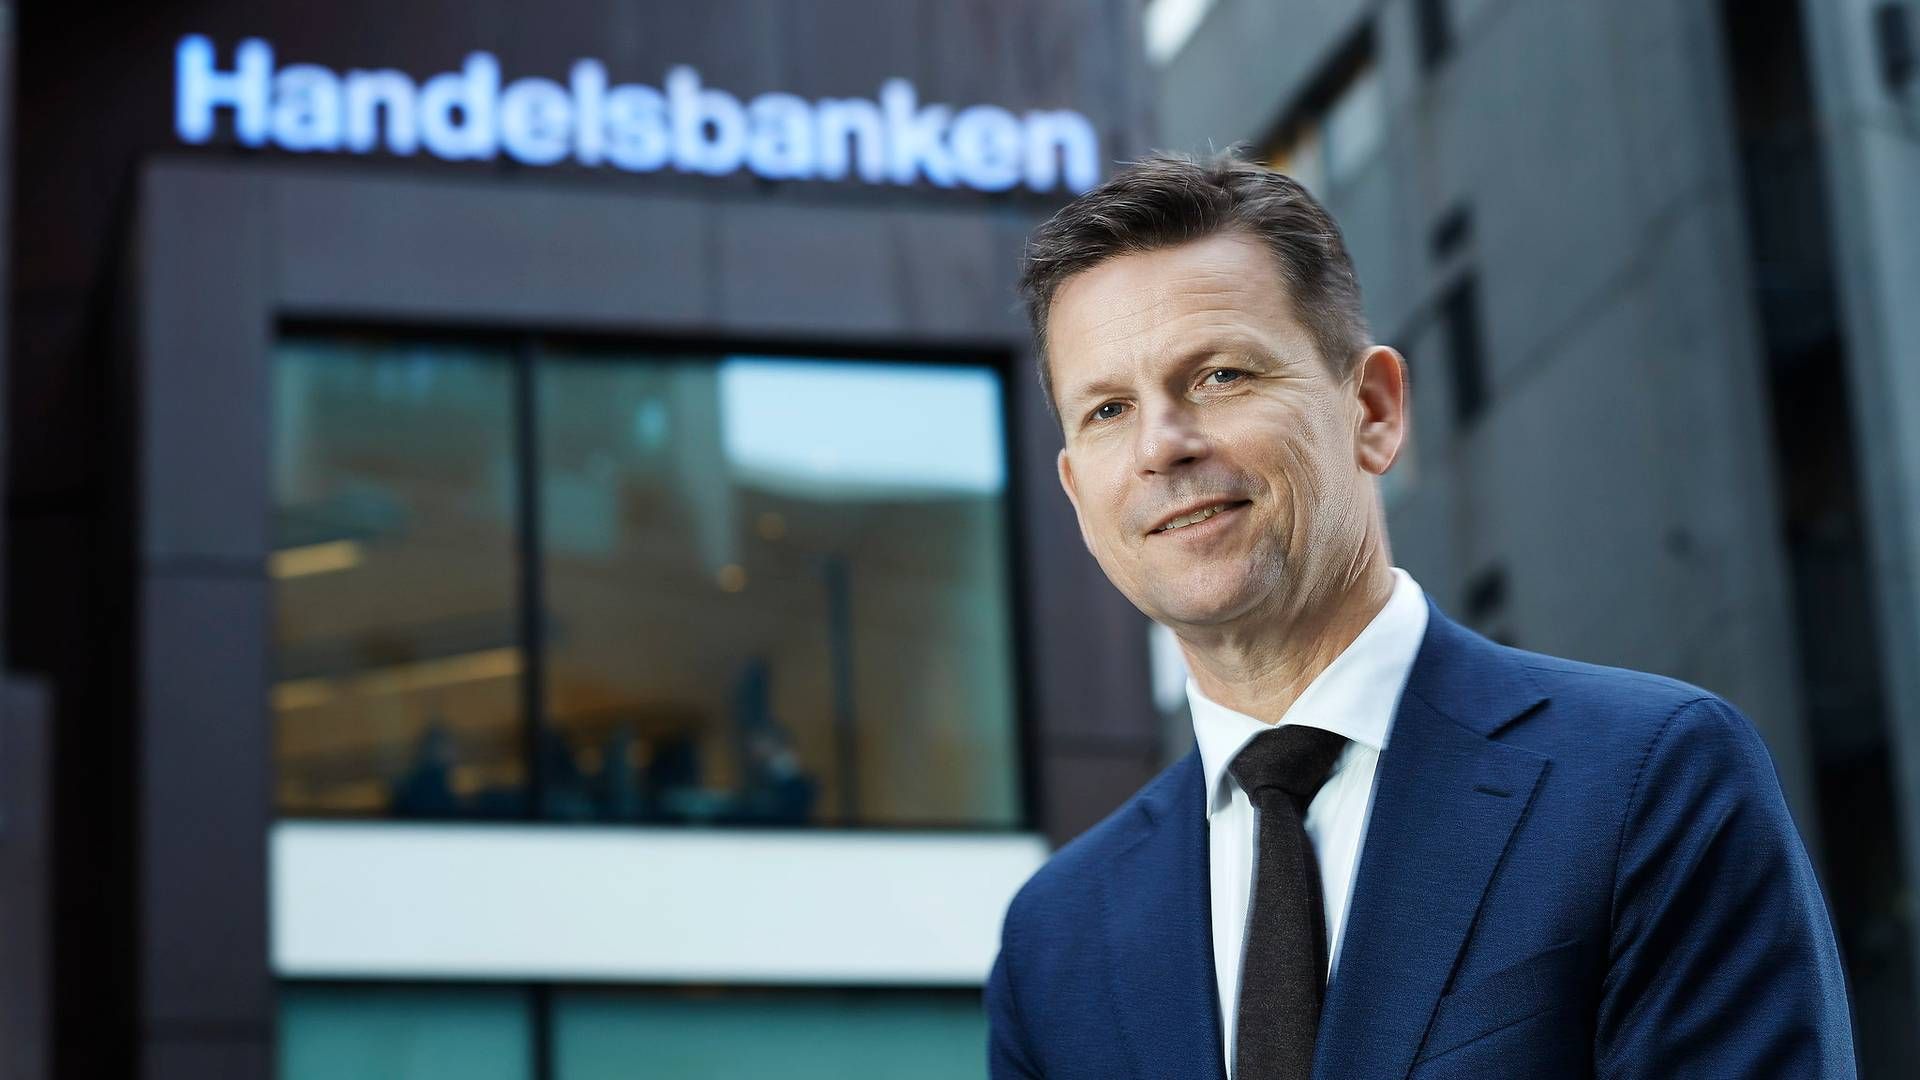 NYE KUNDER: Handelsbankens landssjef, Arild Andersen, forteller om et høyt antall nye kunder.